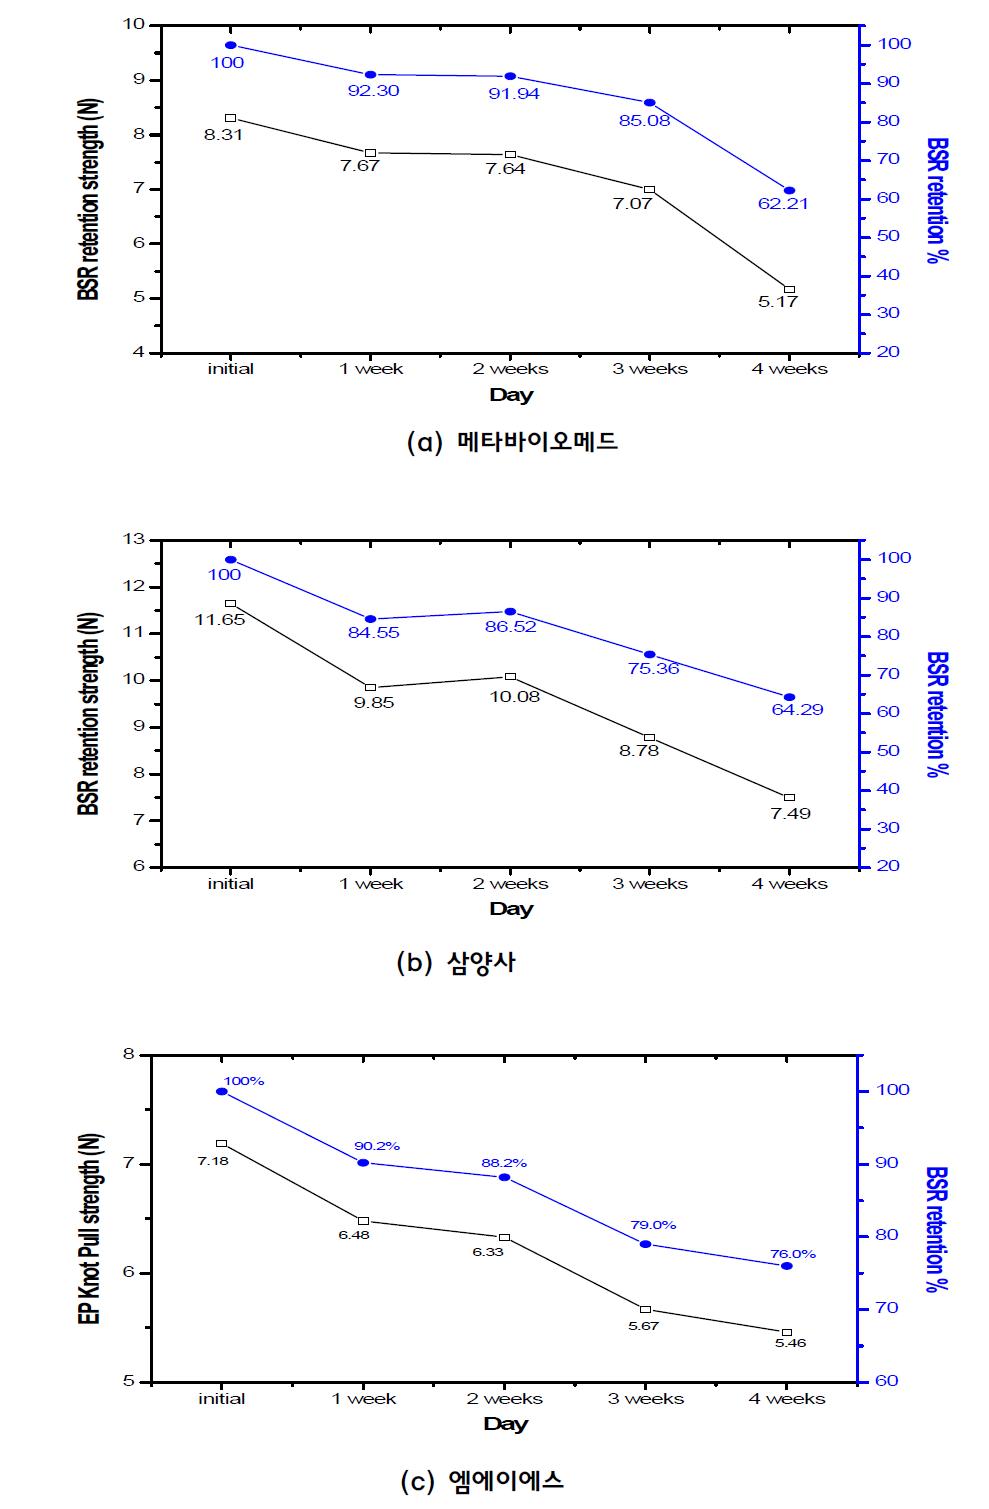 메타바이오메드 vs. 삼양사 vs. 엠에이에스 제품의 BSR retention % (USP 5-0 size)